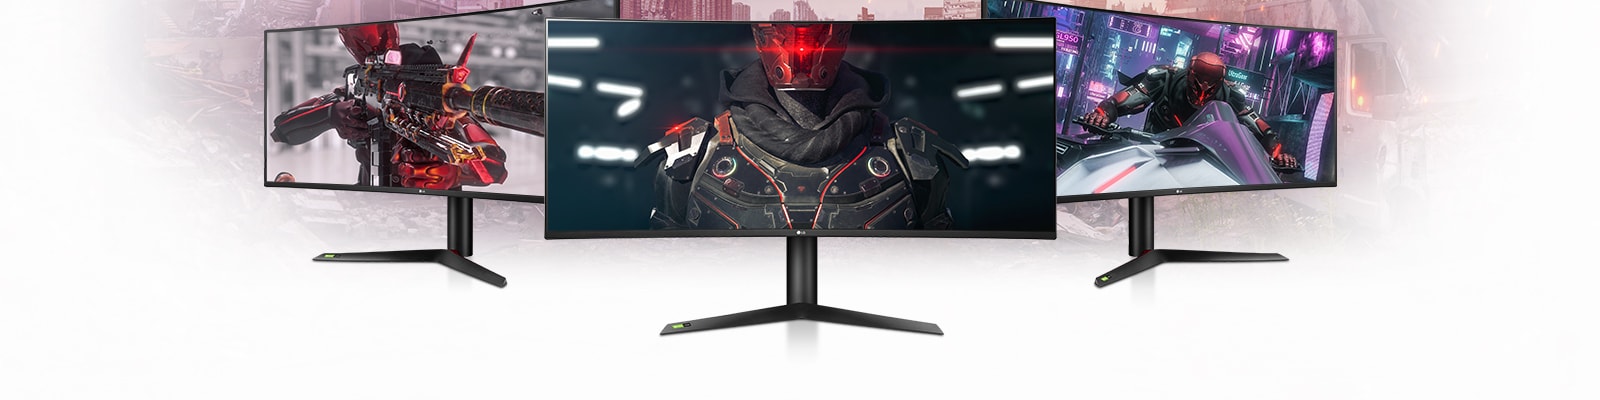 MNT-UltraGear-2019-12-2-Product-Line-Up-Desktop